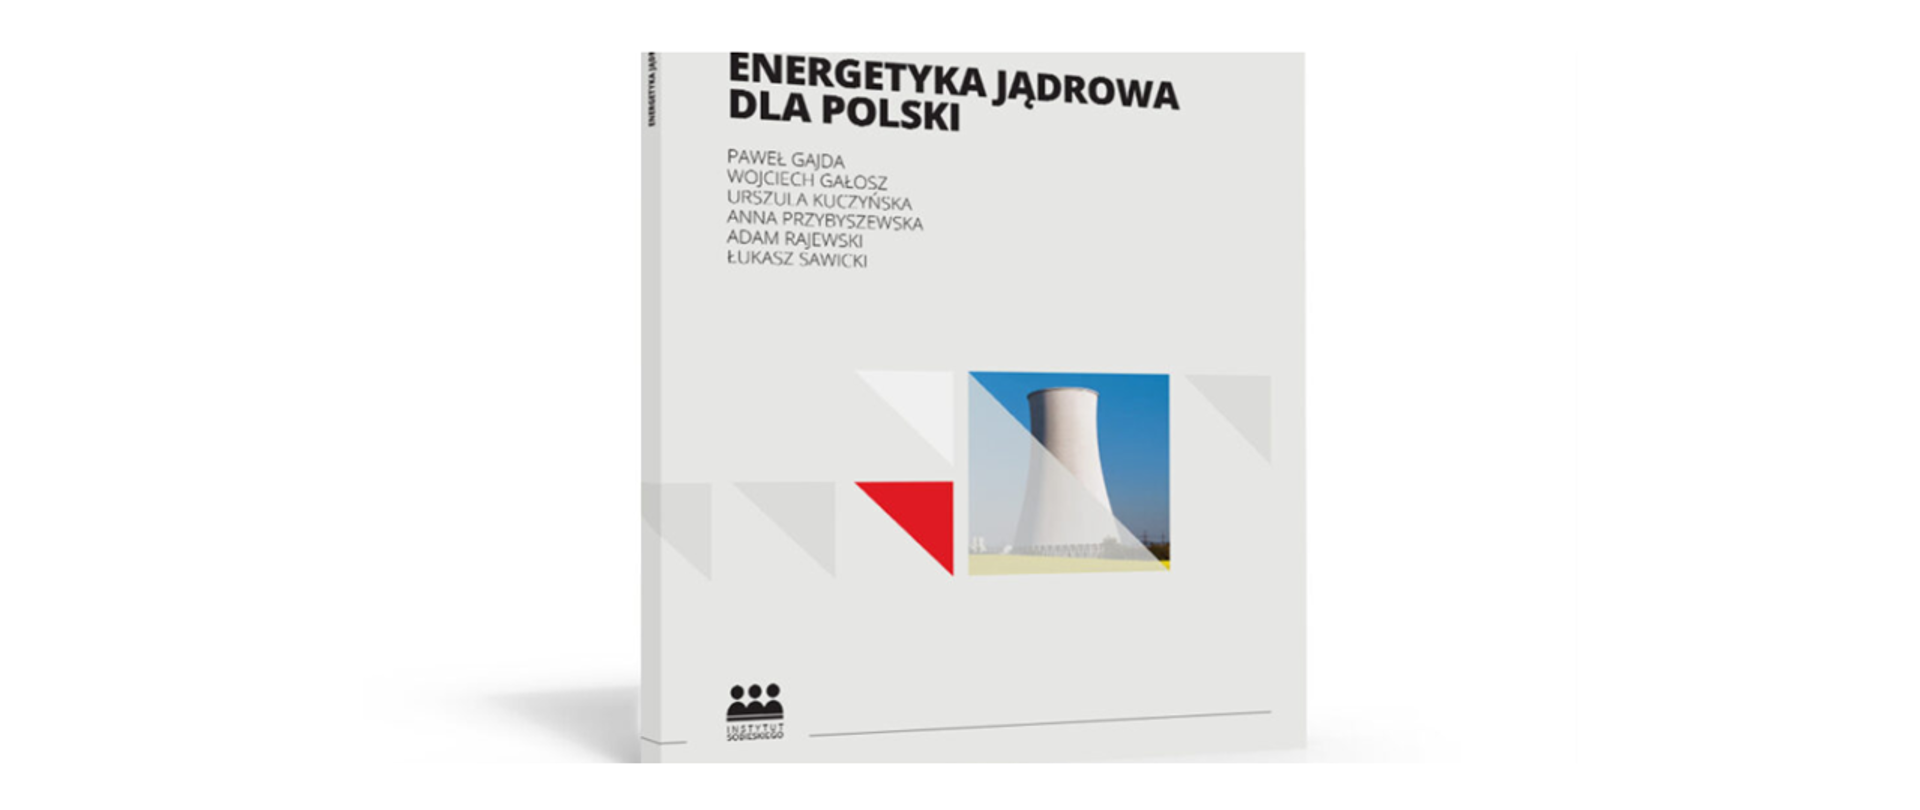 Raport "Energetyka Jądrowa Dla Polski"